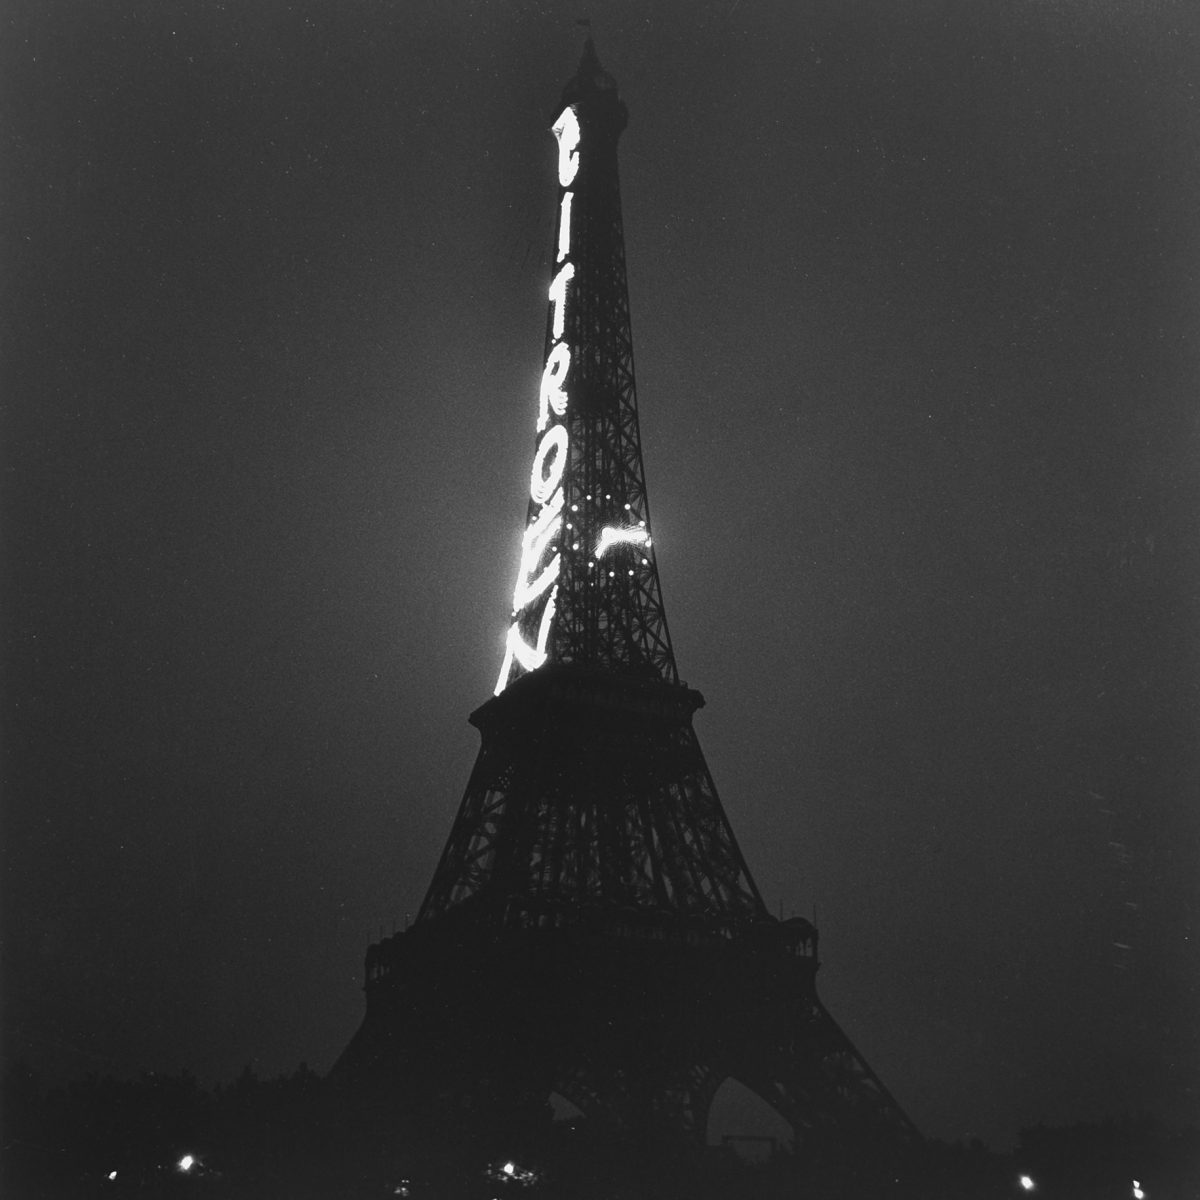 Roger Schall, Tour Eiffel, 1935